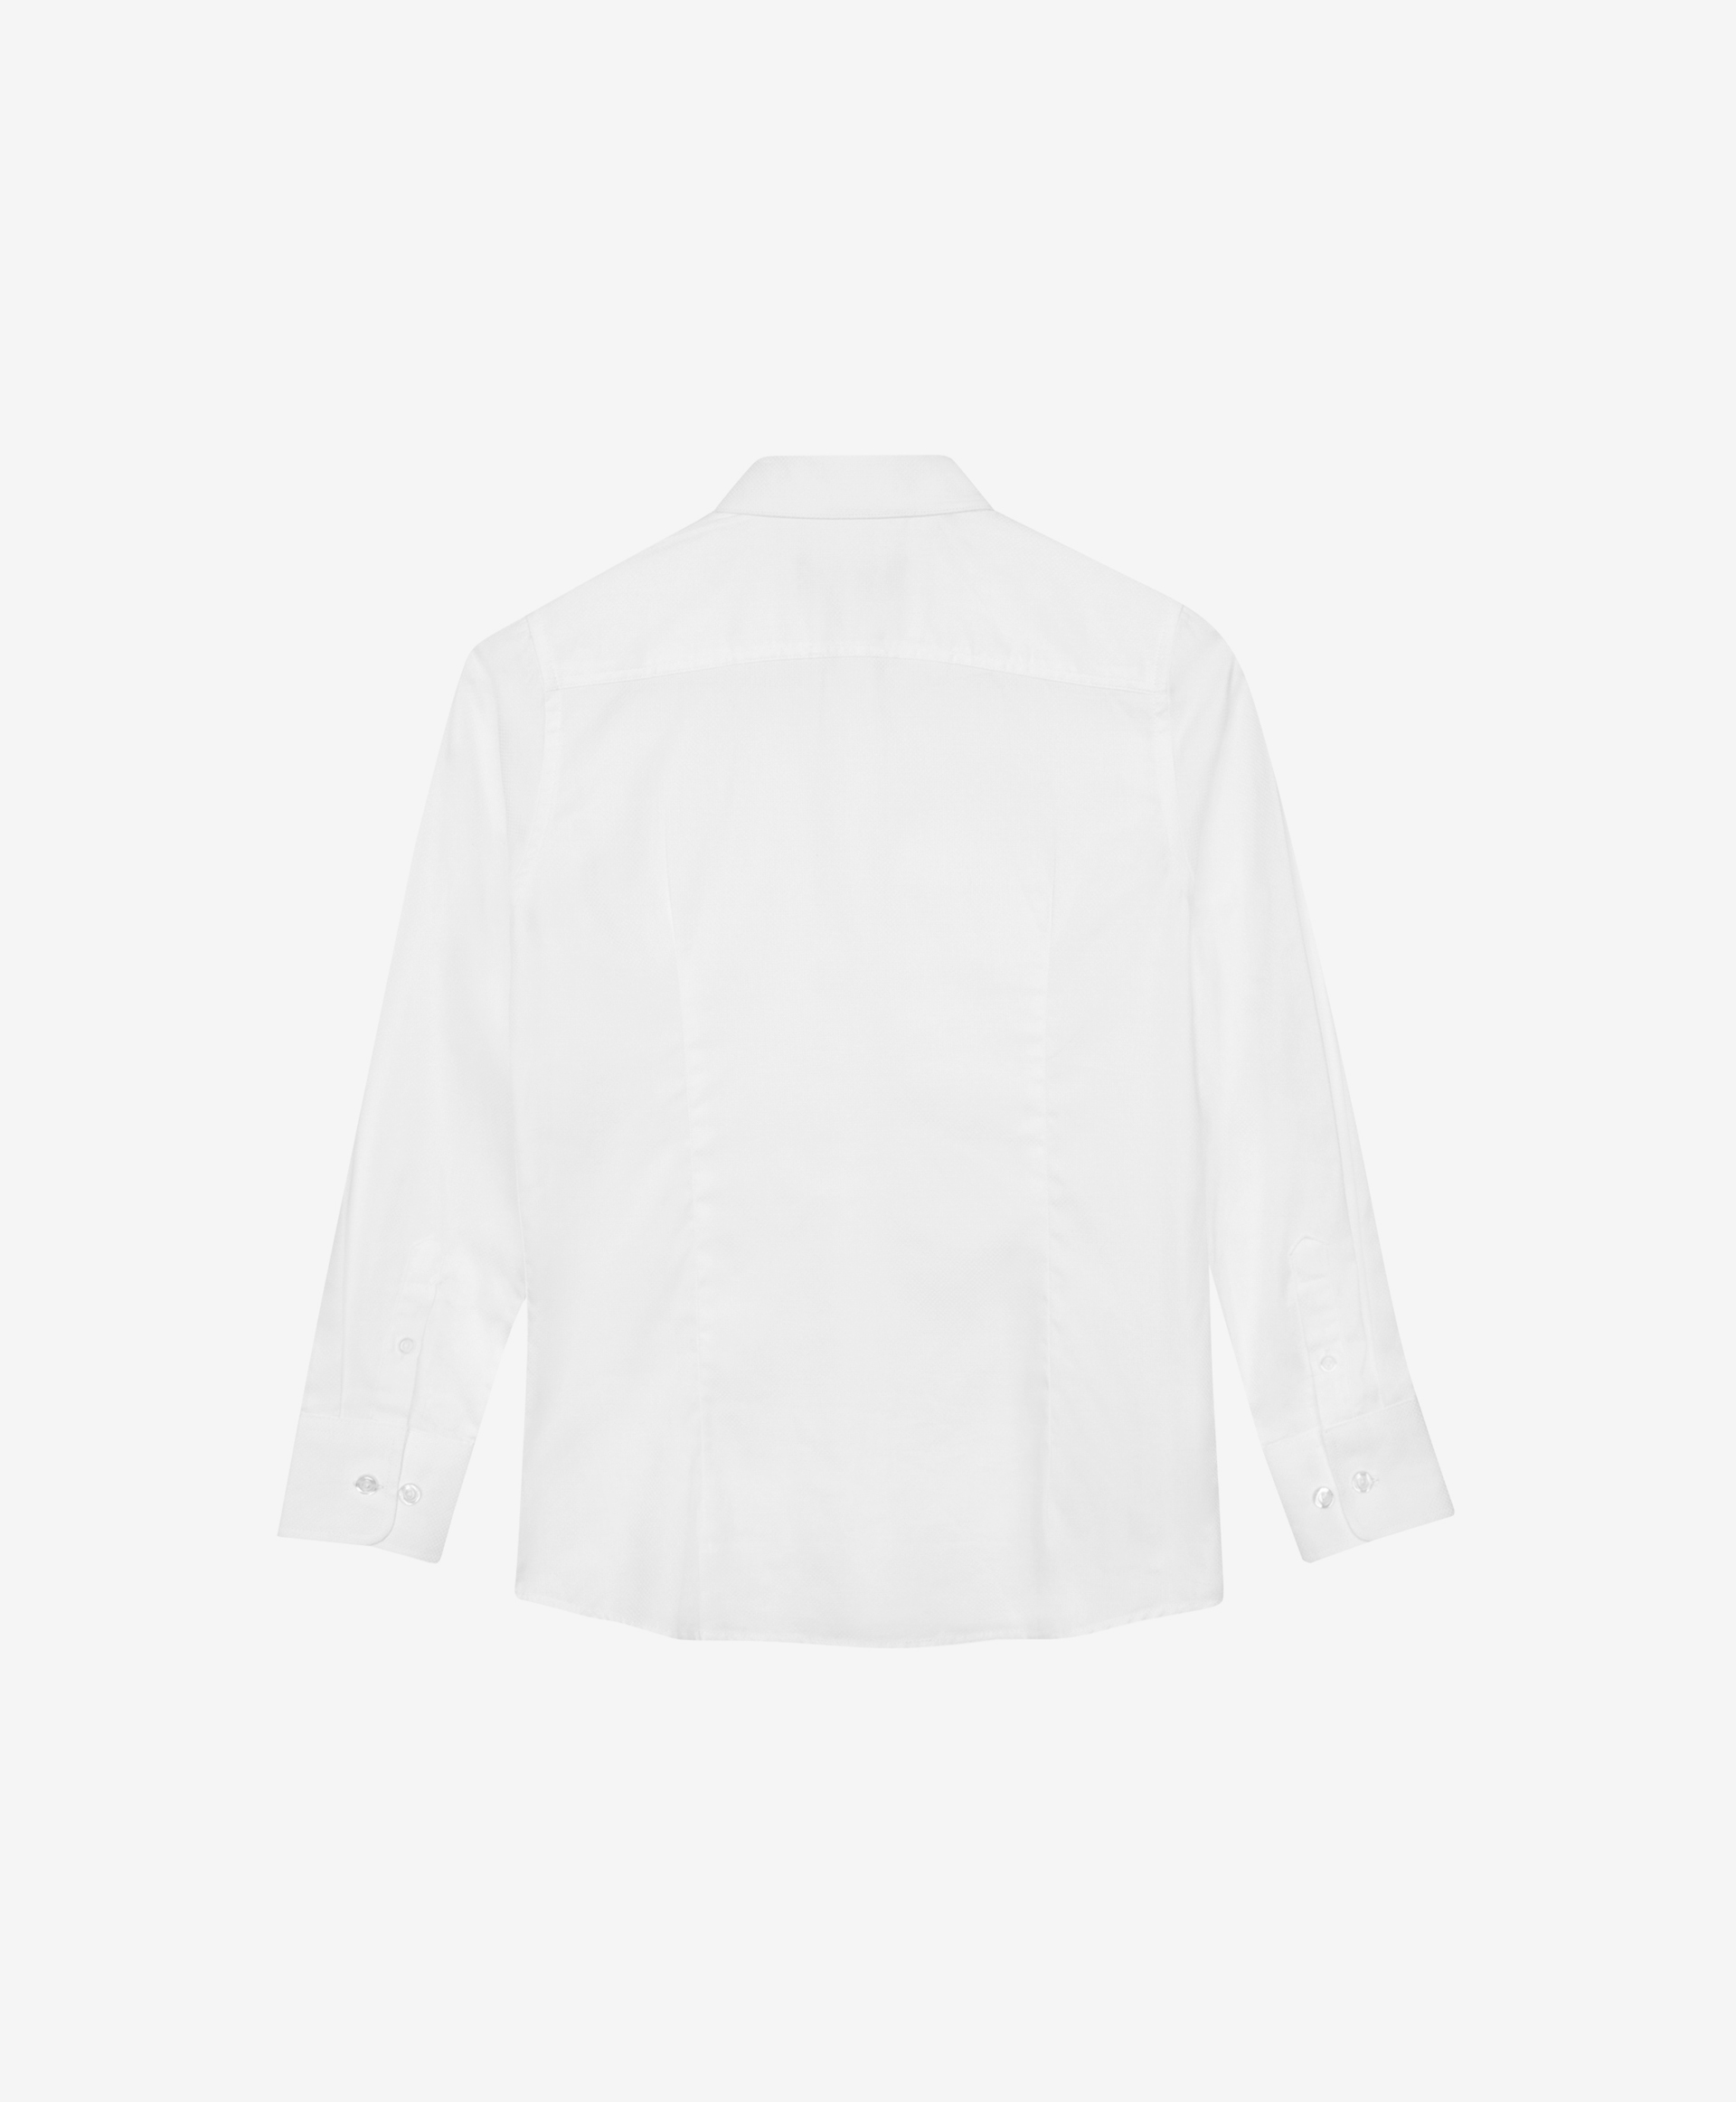 Сорочка белая с длинным рукавом Gulliver 200GSBC2302, размер 134*68*32, цвет белый - фото 4